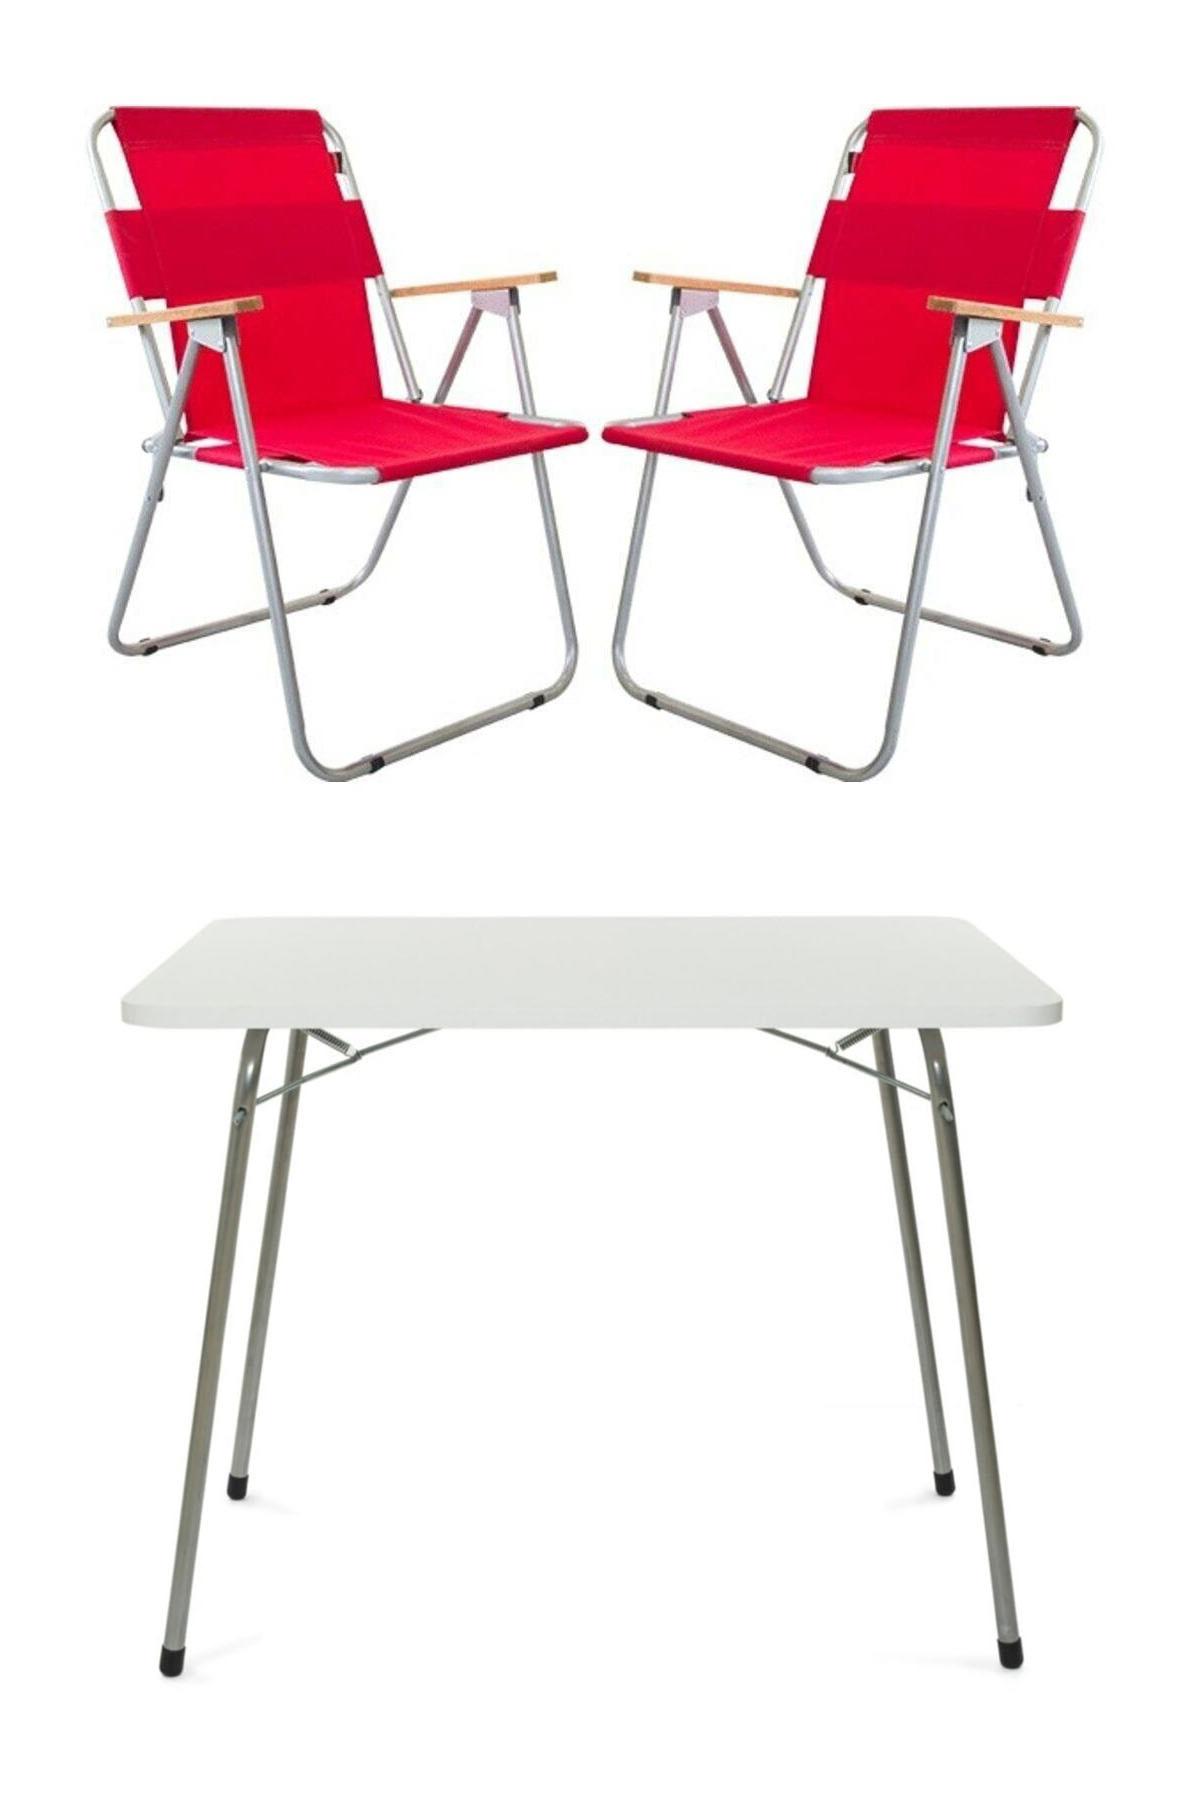 Bofigo 60 x 80 cm Tabureli Çantalı Dikdörtgen Granit Katlanır Kamp Masası Beyaz + 2 Adet Katlanır Sandalye Kırmızı